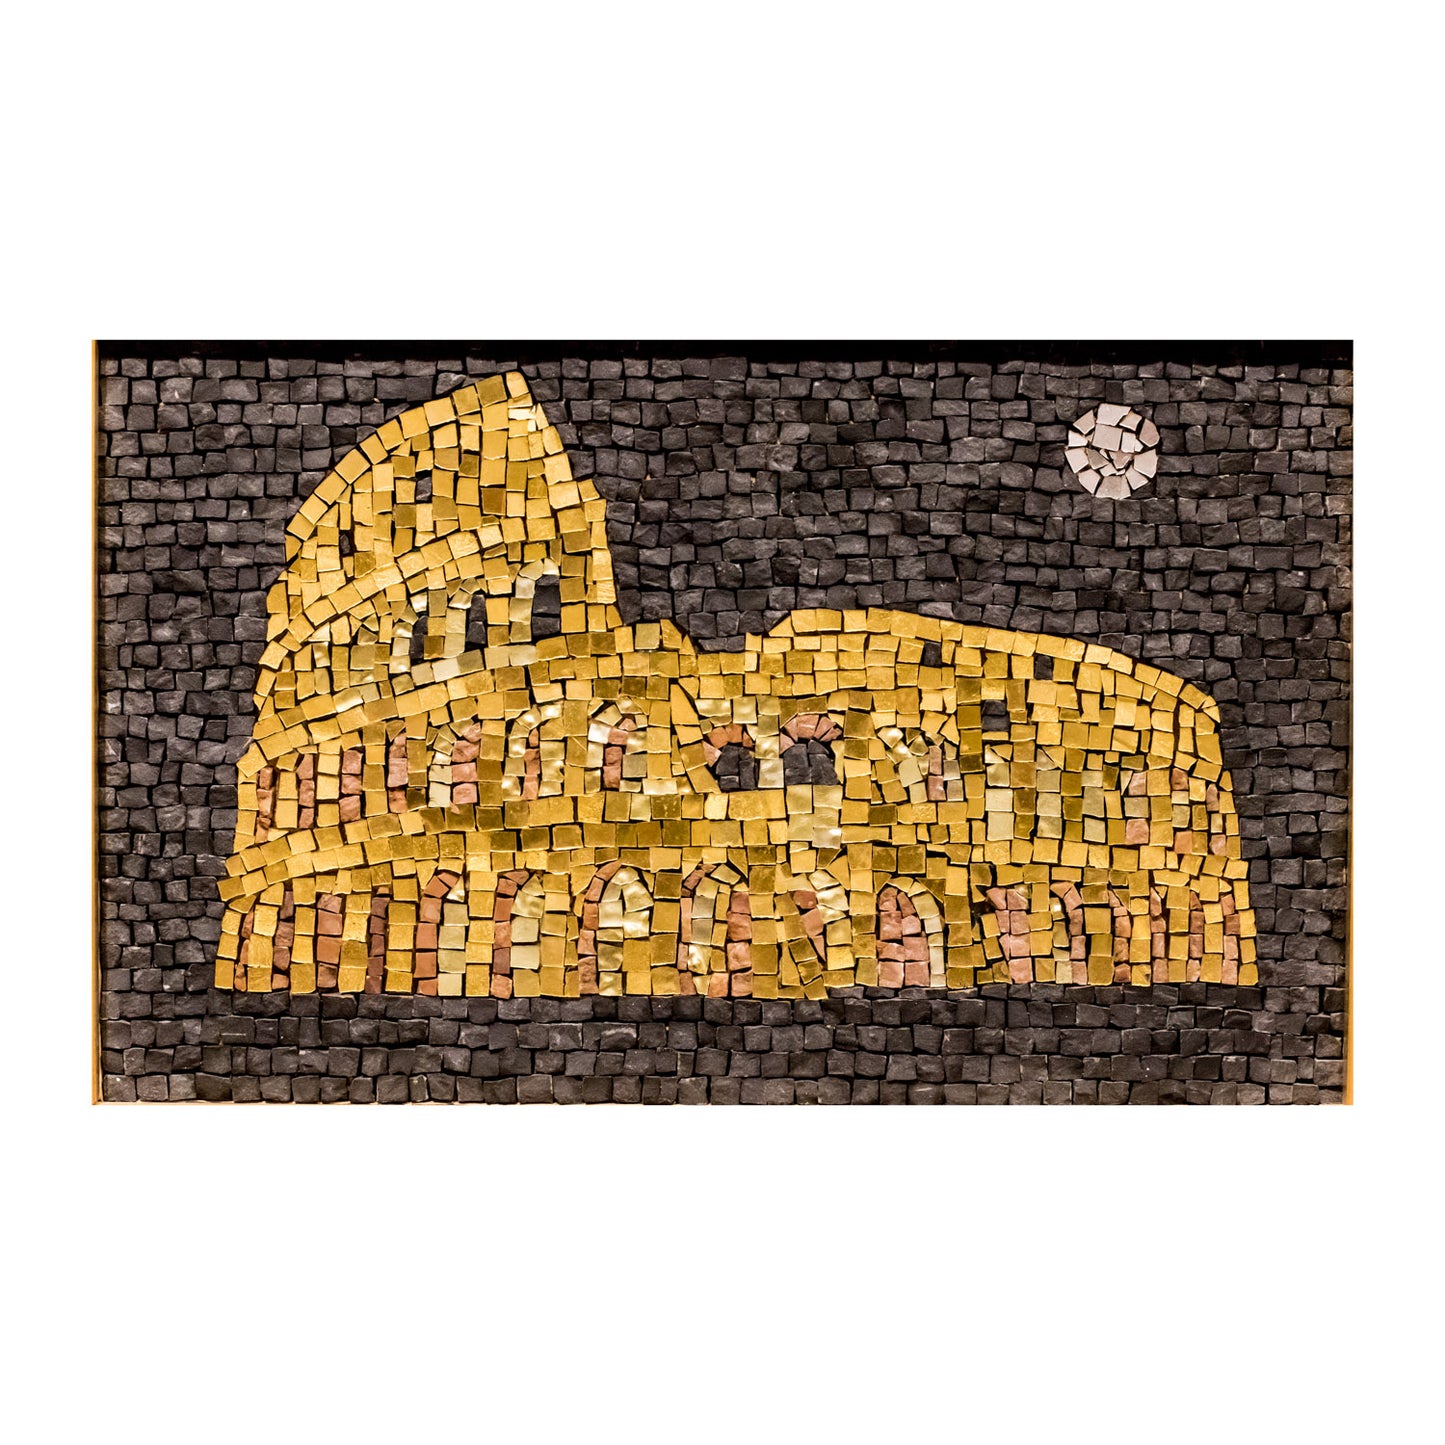 Mosaico Il Colosseo con Dettagli Dorati